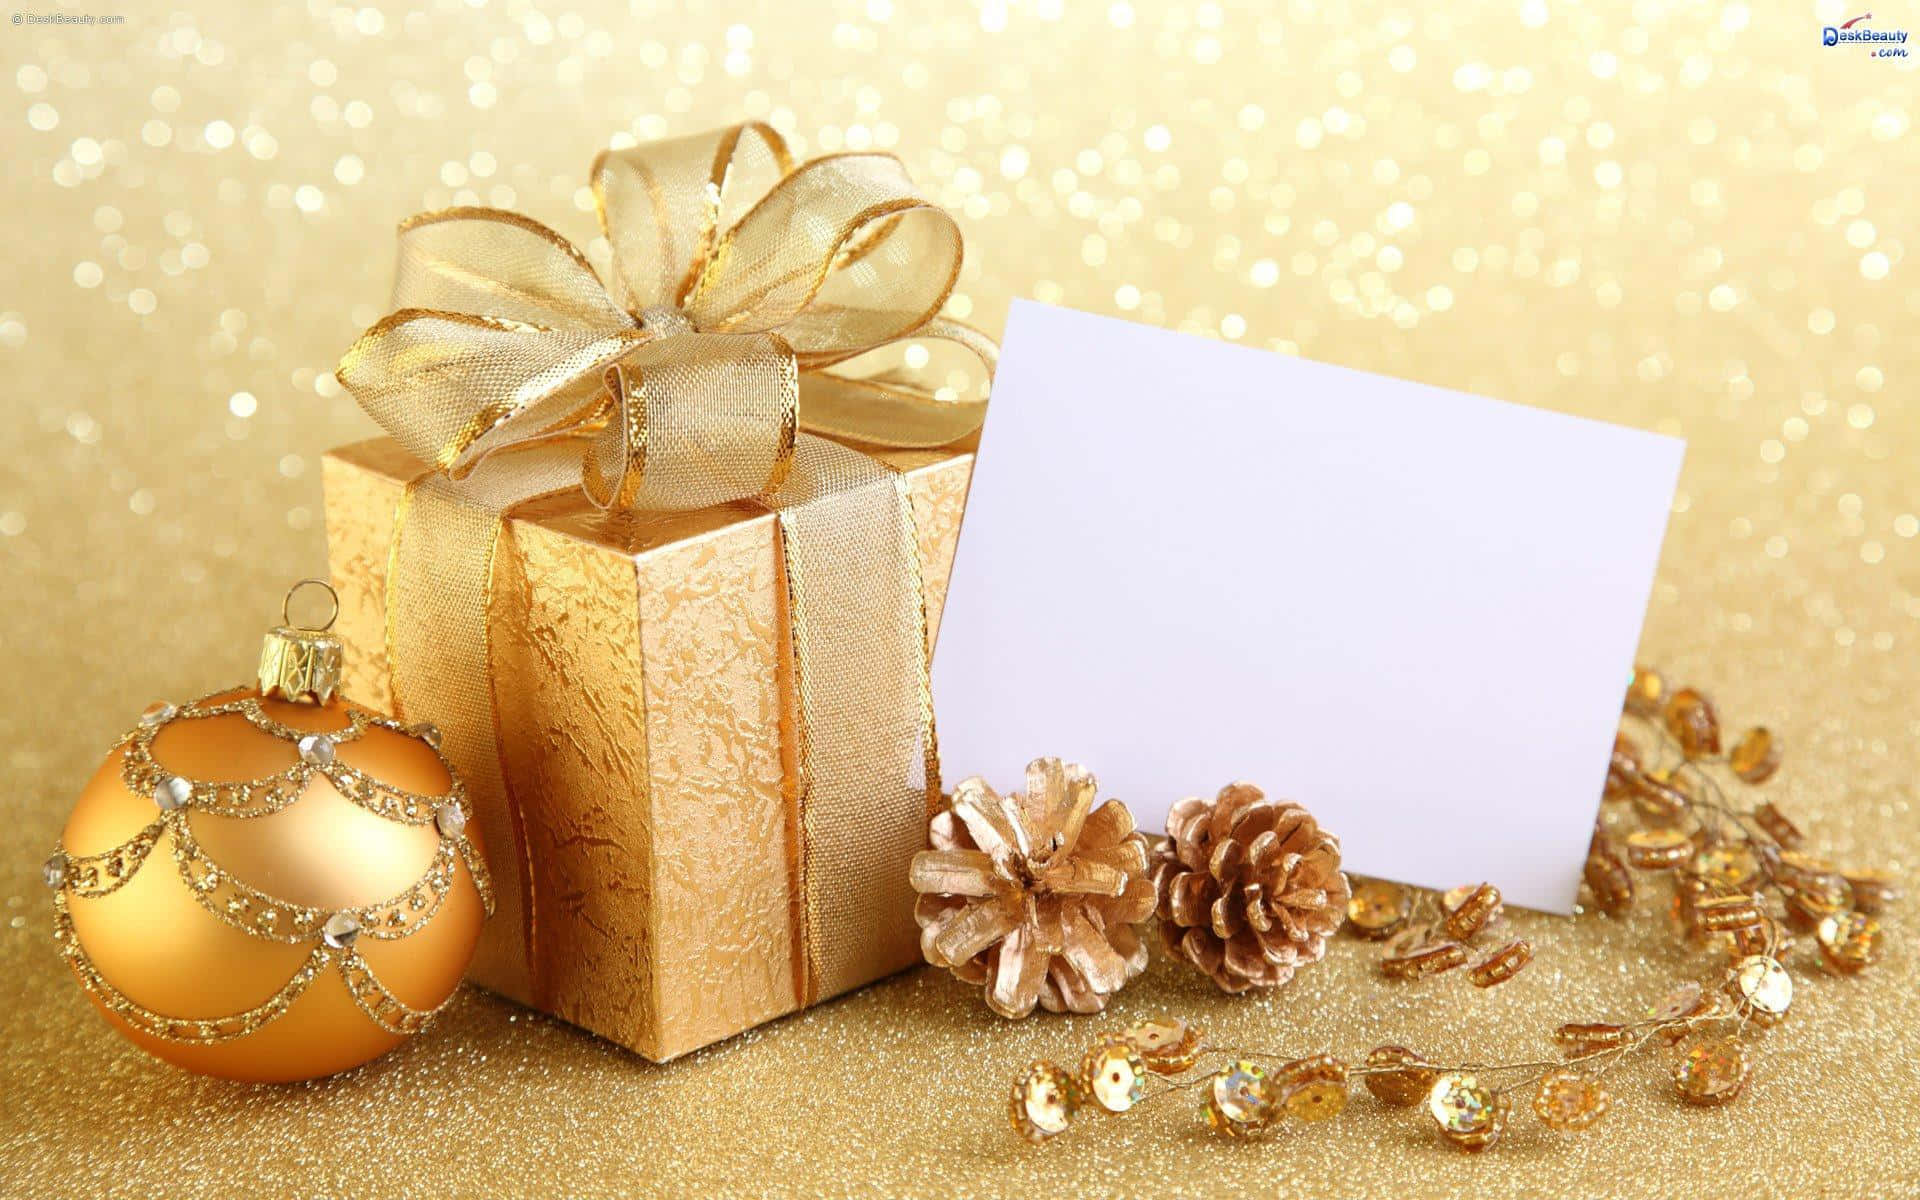 Fejr jul ved at sende særlige julekort.